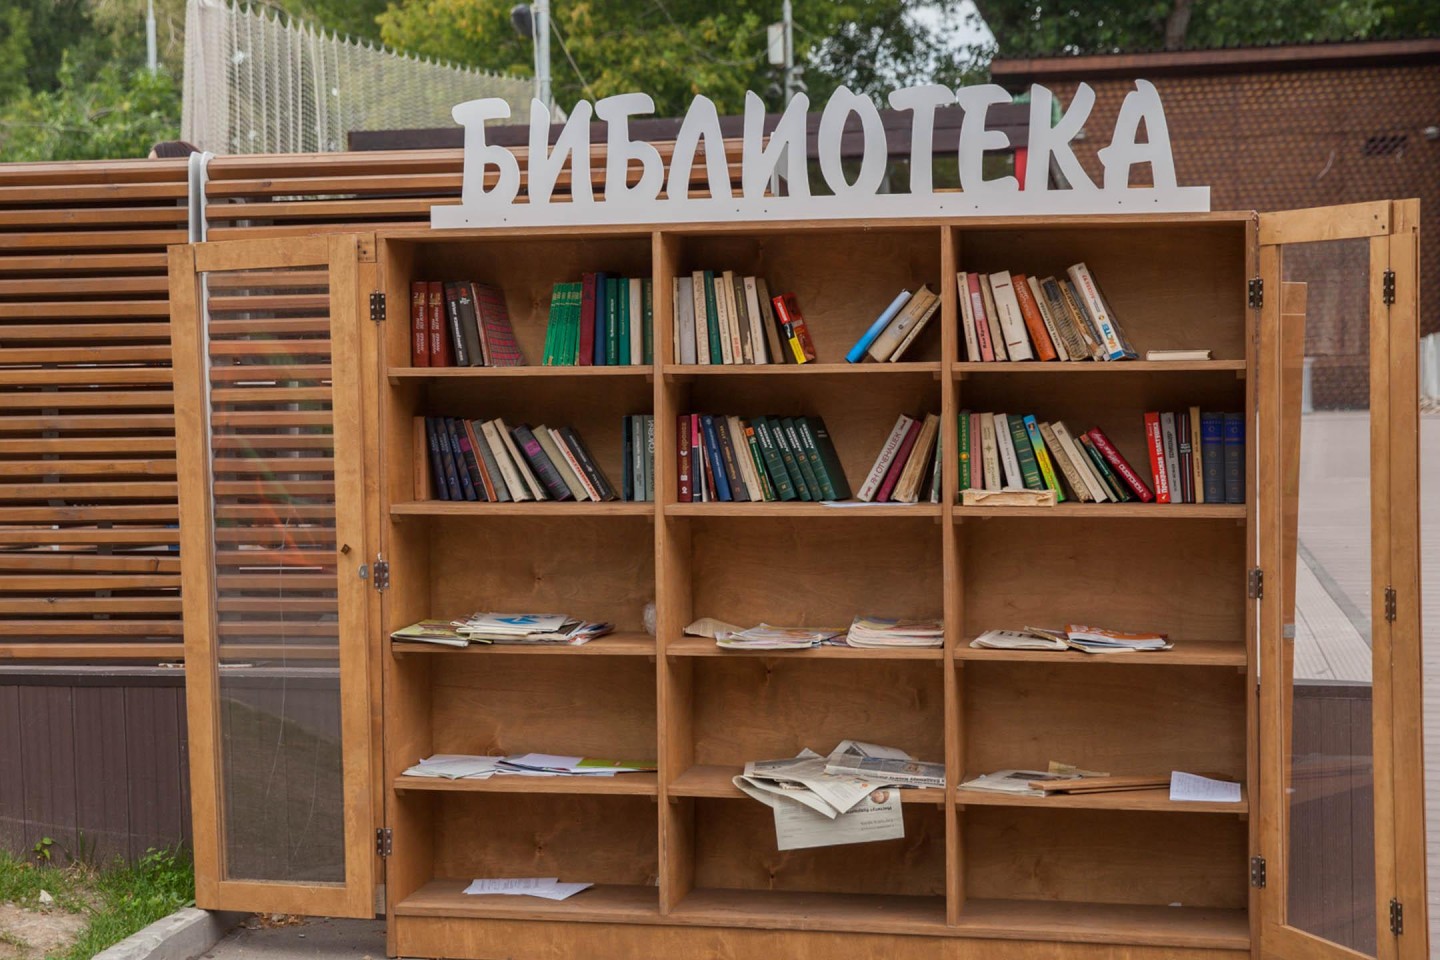 Библиотеки в парках Москвы за лето посетили более 35 тыс. человек